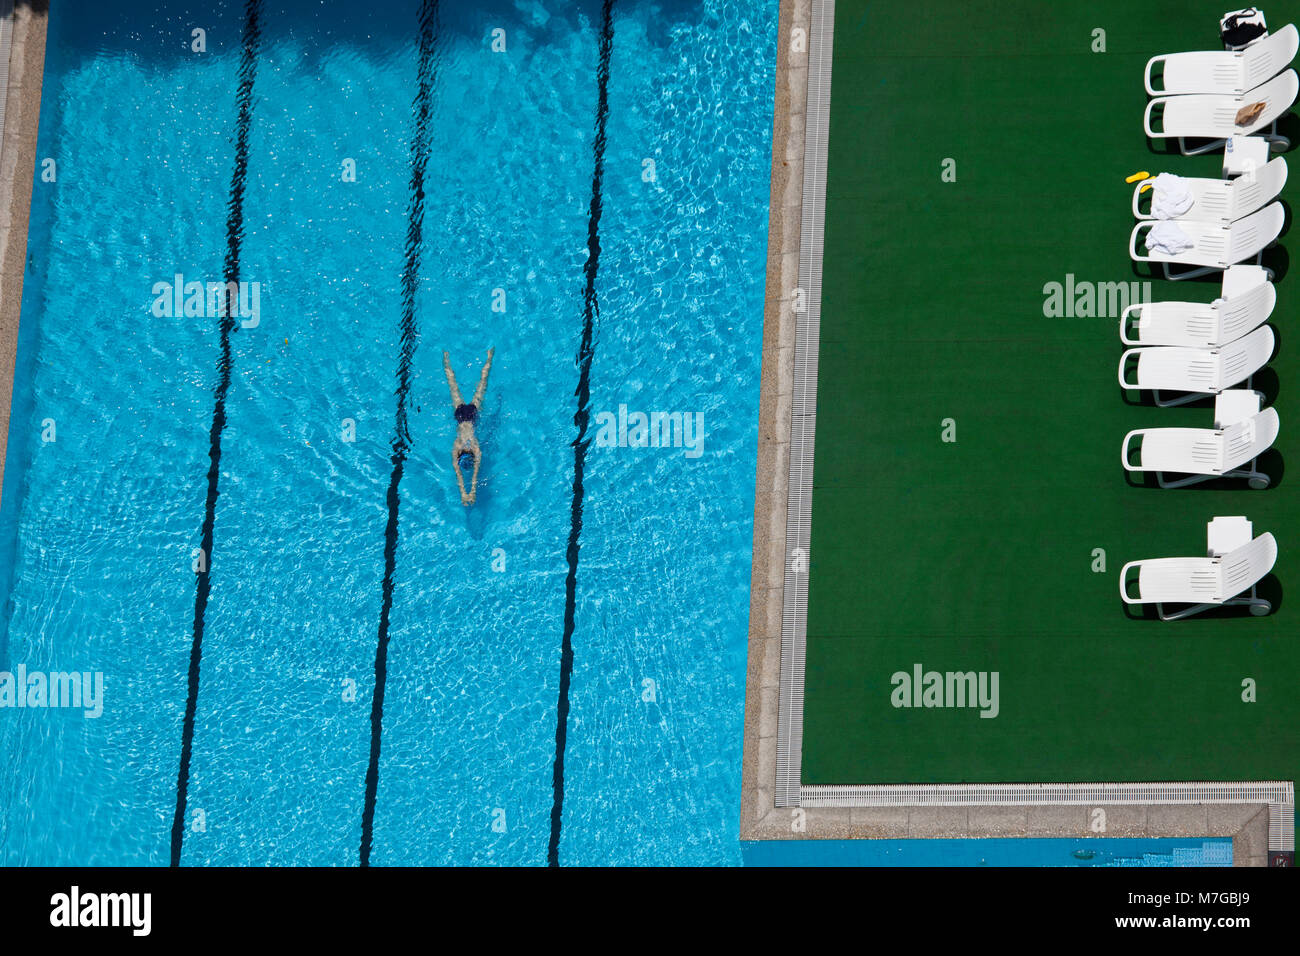 Eine Luftaufnahme einer Frau schwimmen in der Schwimmhalle in Guangzhou, China. Stockfoto